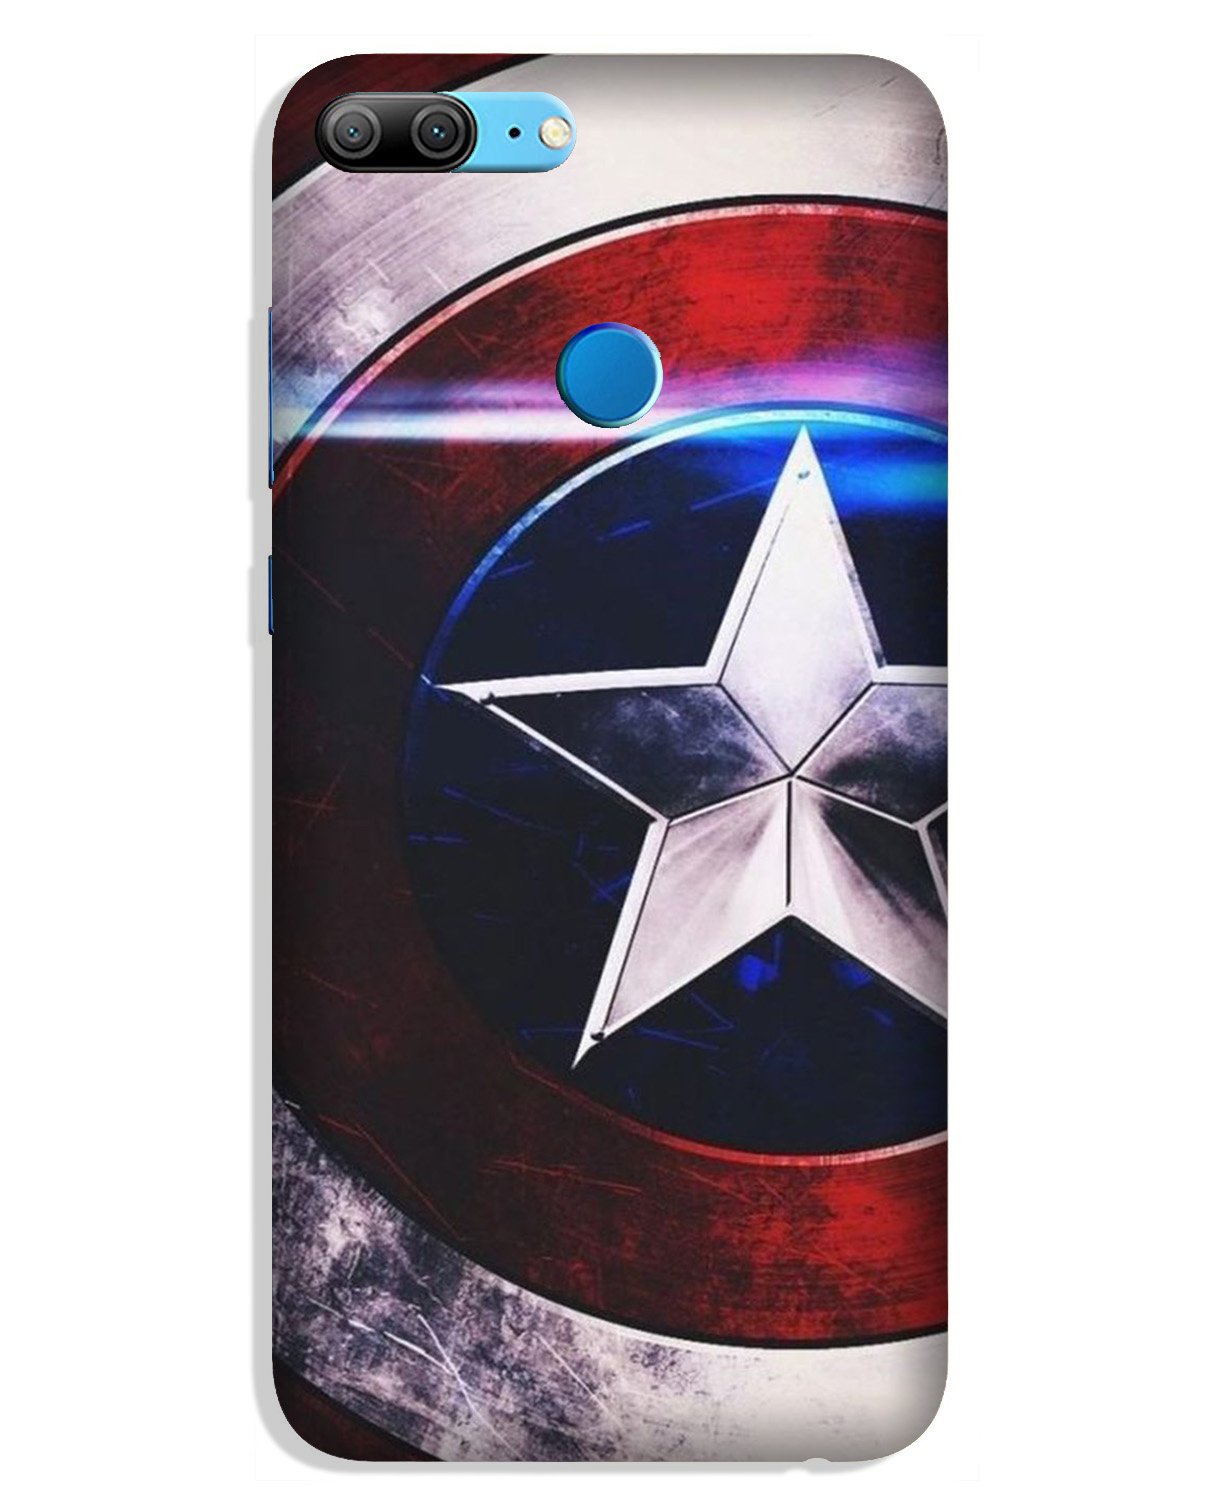 Captain America Shield Case for Lenovo K9 / K9 Plus (Design No. 250)